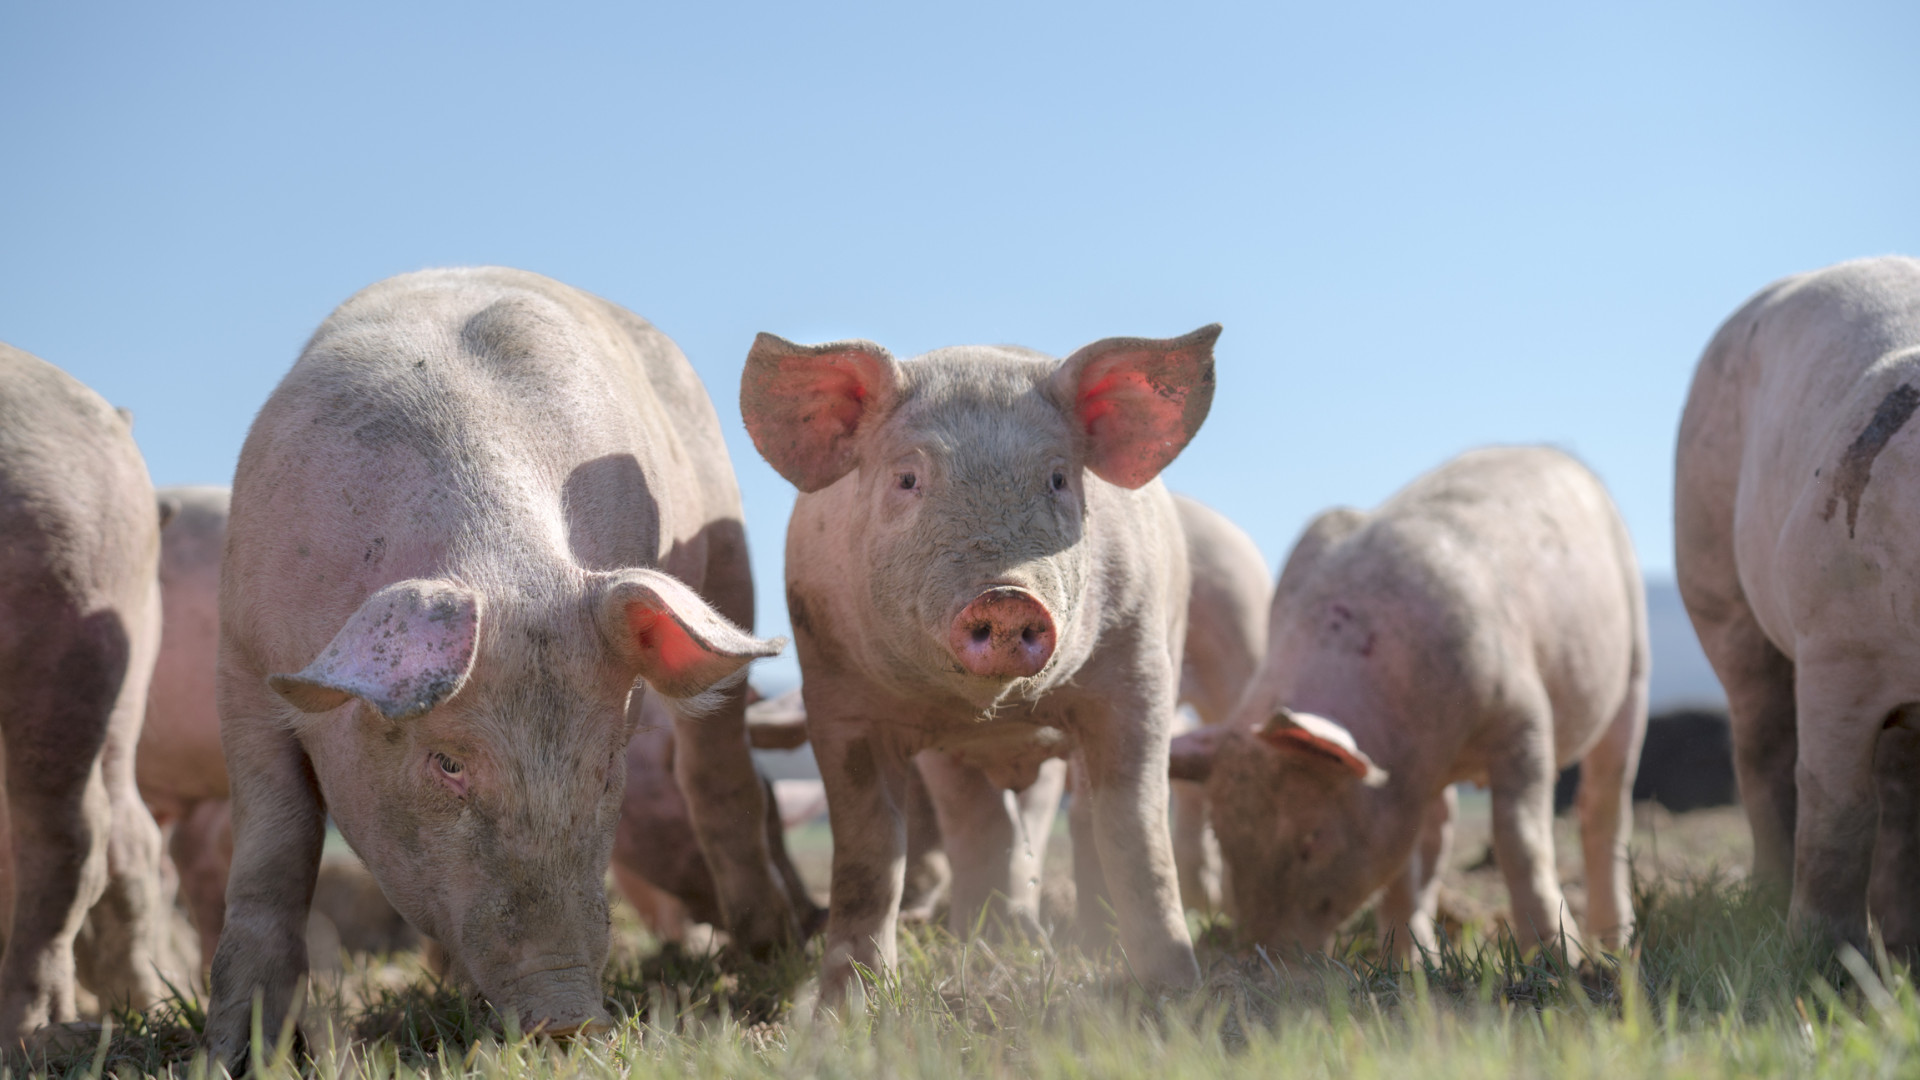 Agricultor polaco desaparecido foi comido por porcos